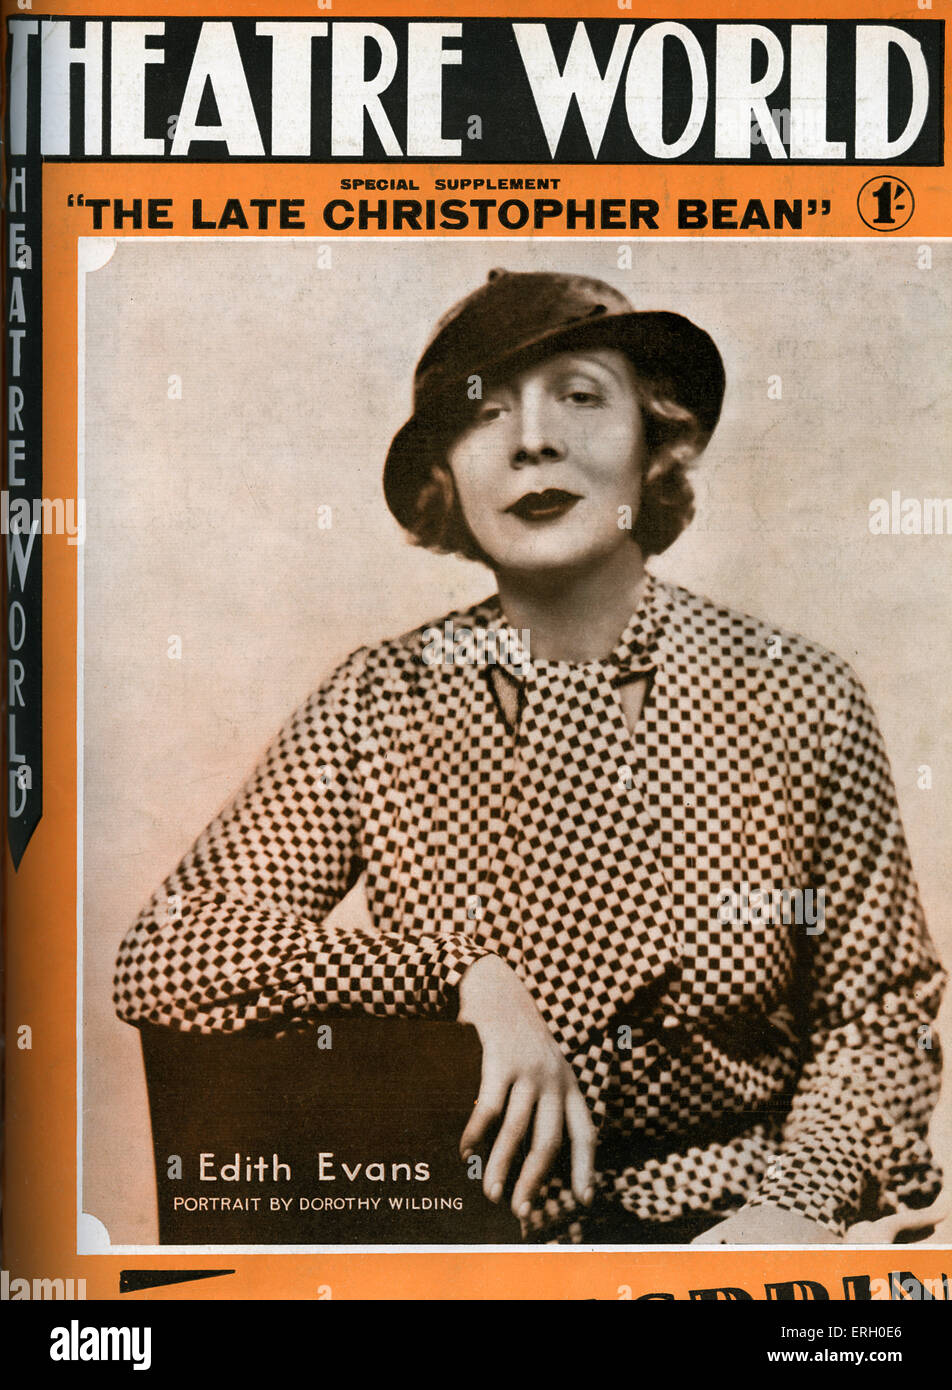 Edith Evans sul coperchio del mondo teatrale, luglio 1933. Supplemento speciale per " Il tardivo Christopher Bean' da René Fauchois, Foto Stock